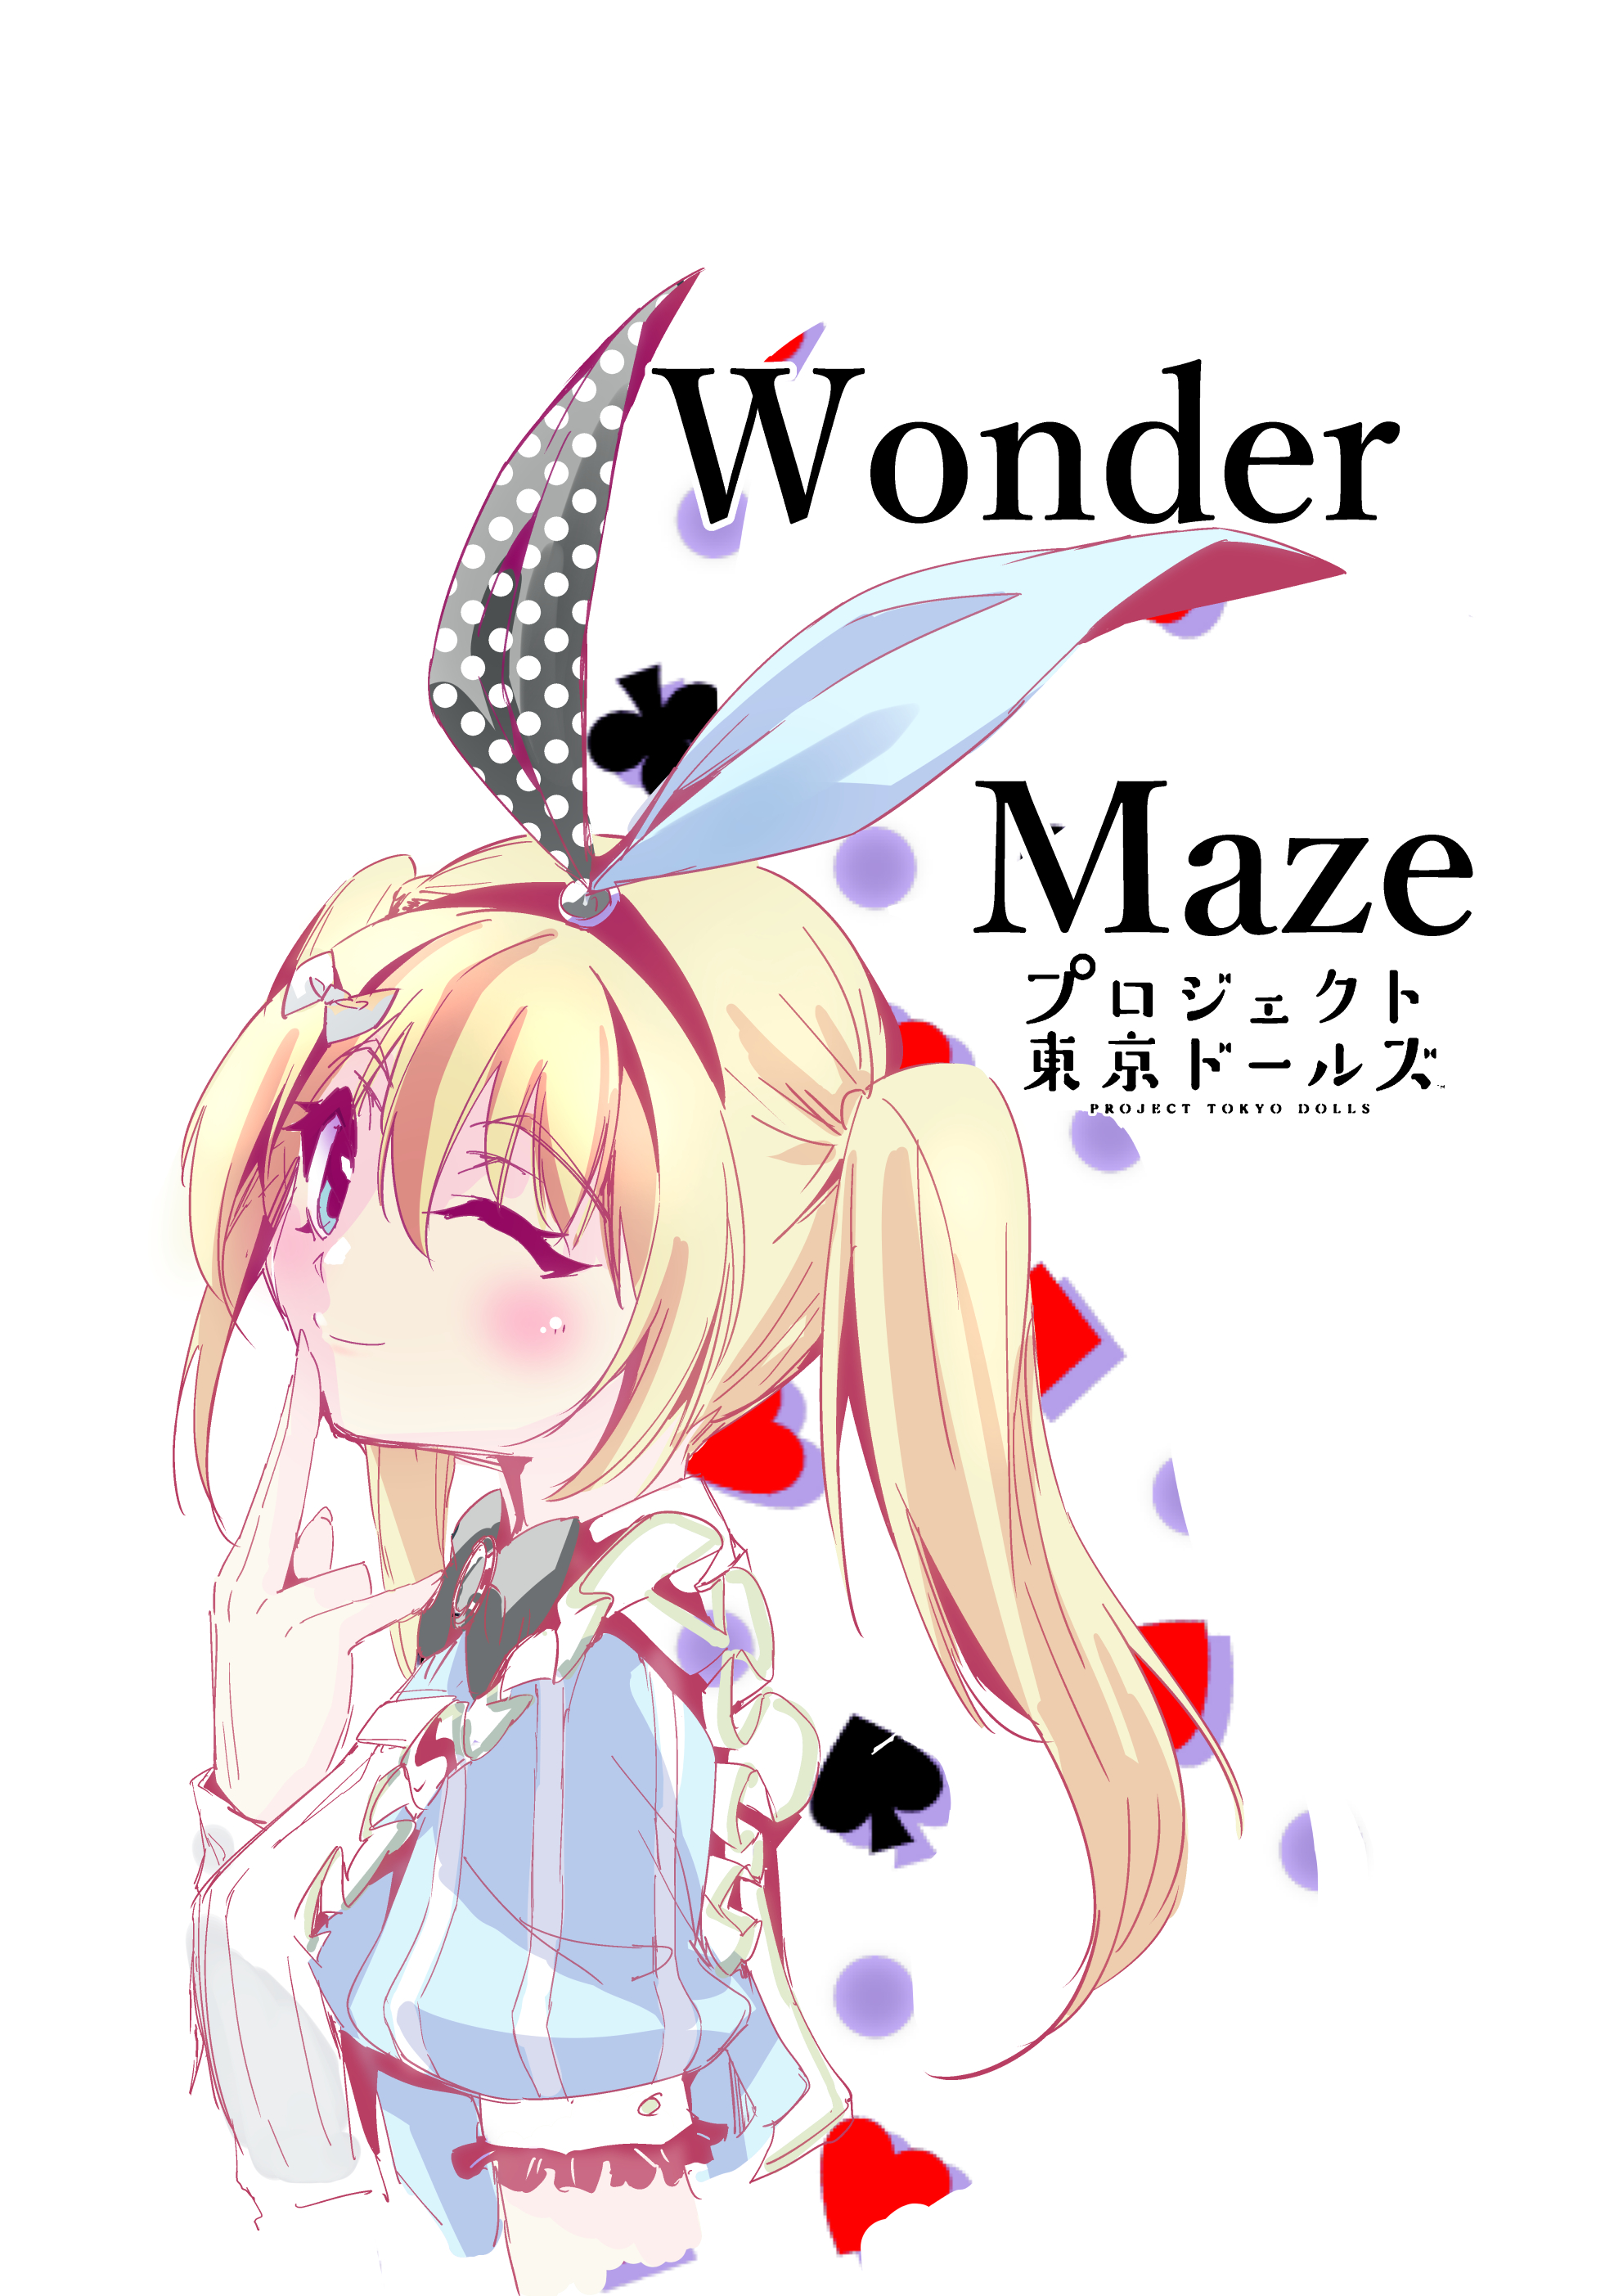 【项目东京道士】WonderMaze阿亚